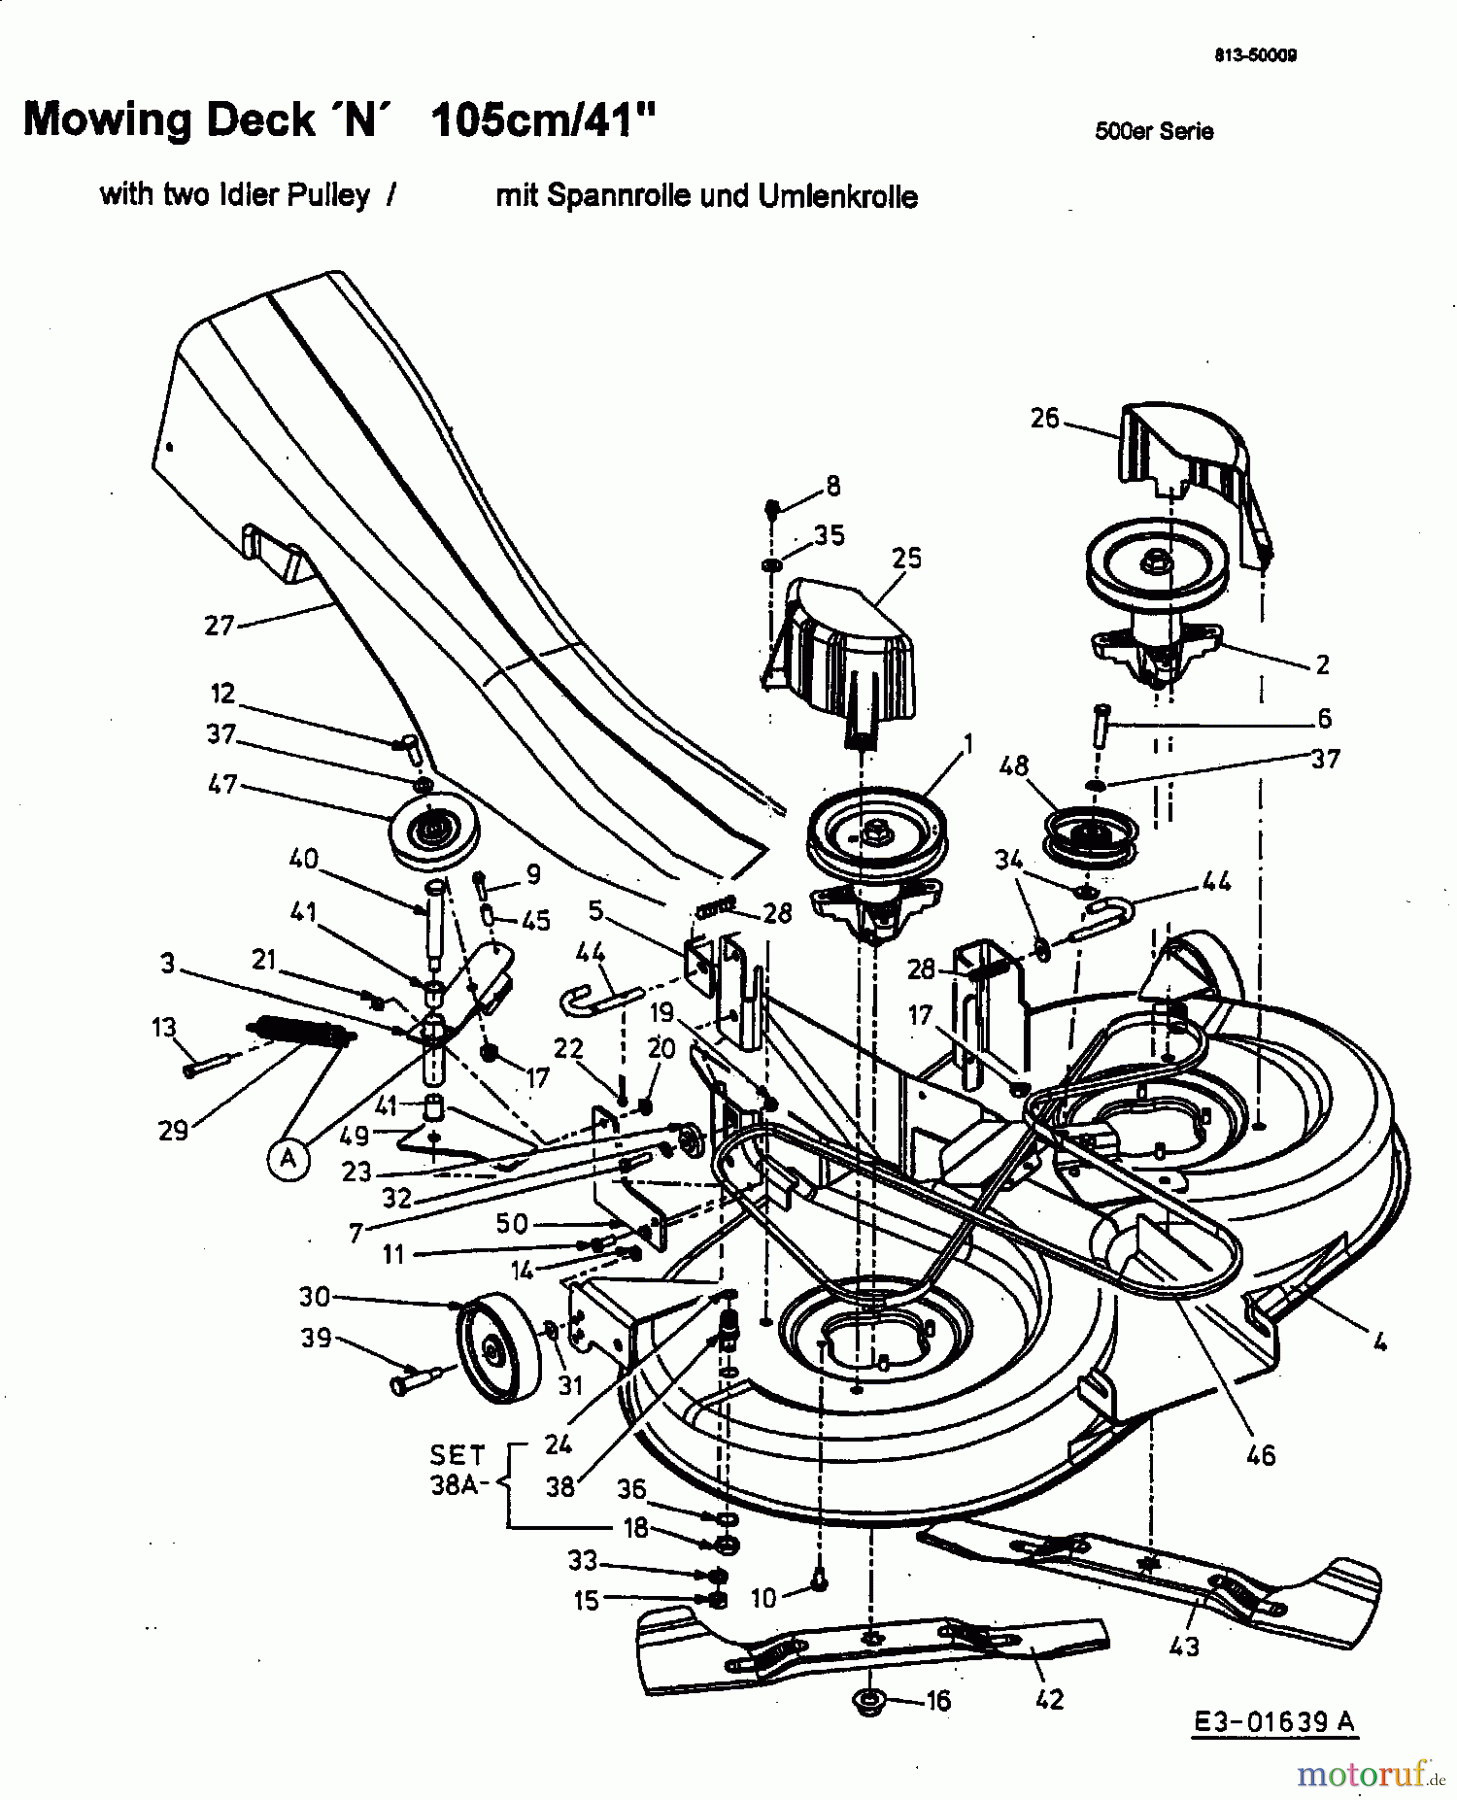  MTD ältere Modelle Rasentraktoren SN 180 AT 13A7508N678  (2002) Mähwerk N, 2. Generation mit Spannrolle und Umlenkrolle (bis 2002)